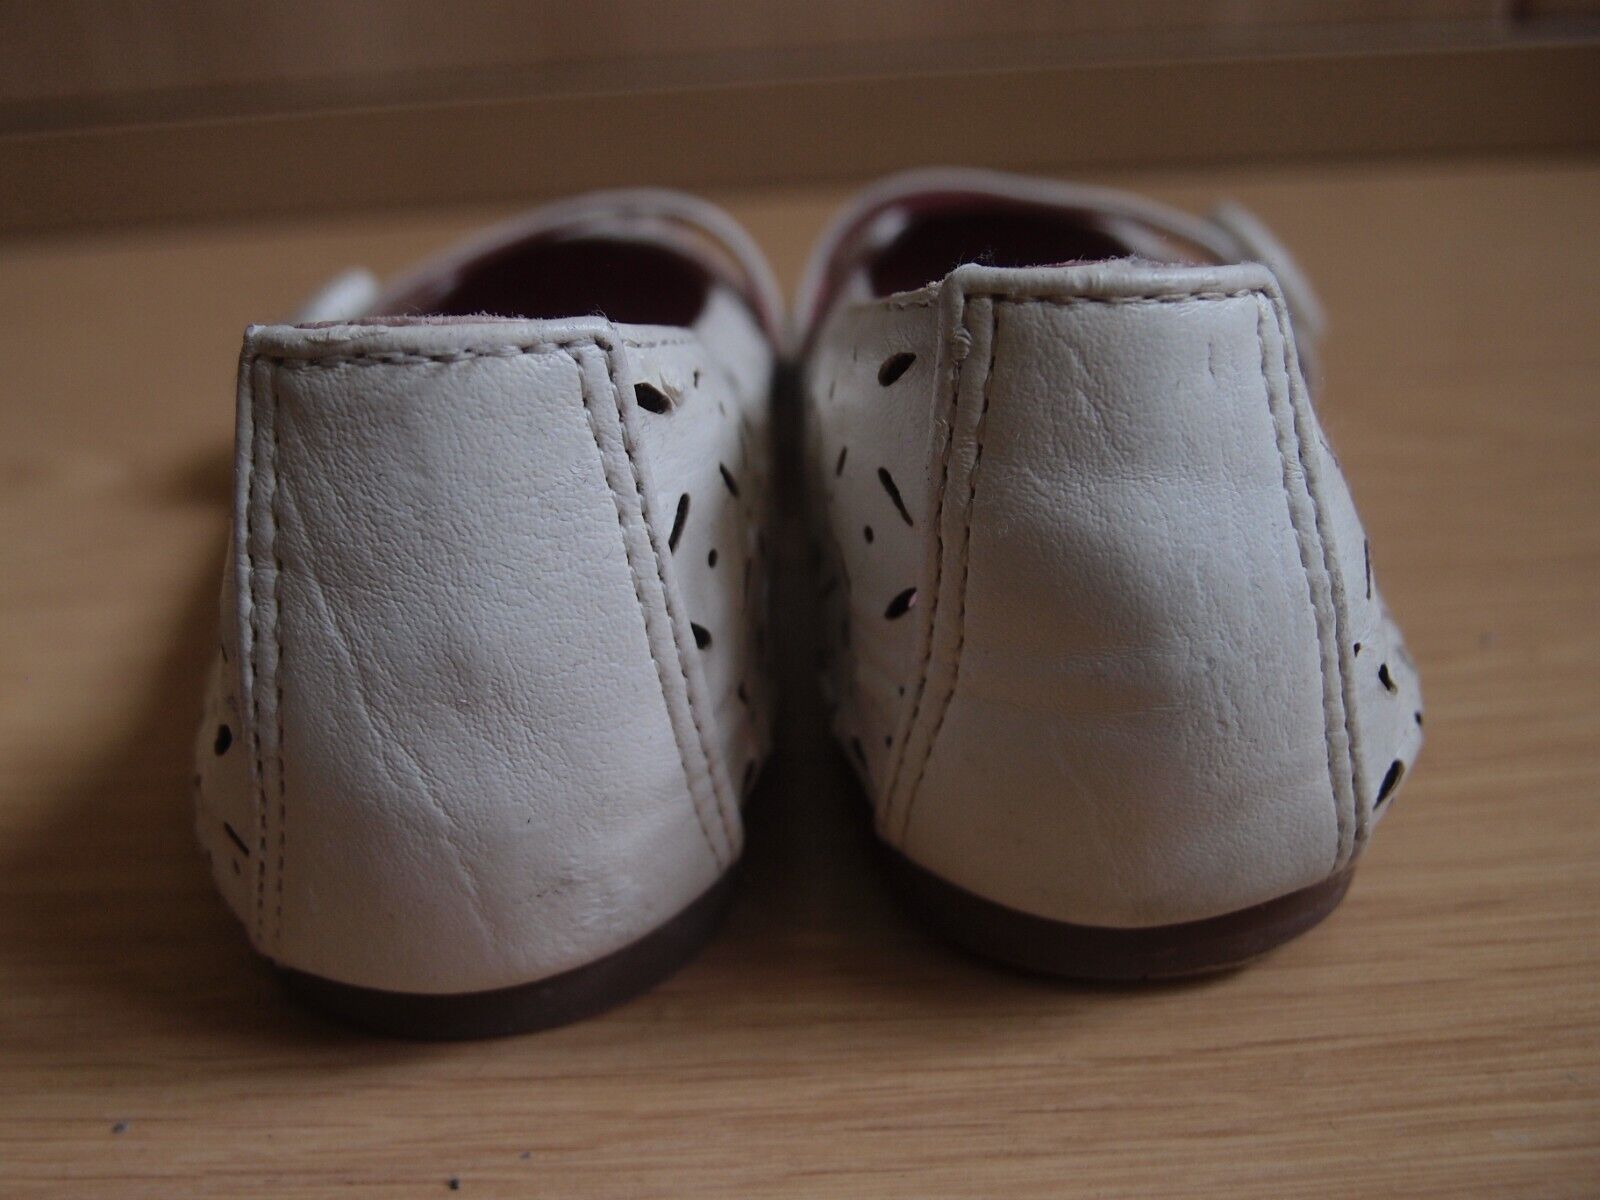 Zapatos blancos niña Nº 33 Elike Kids. COMBINO ENVÍOS